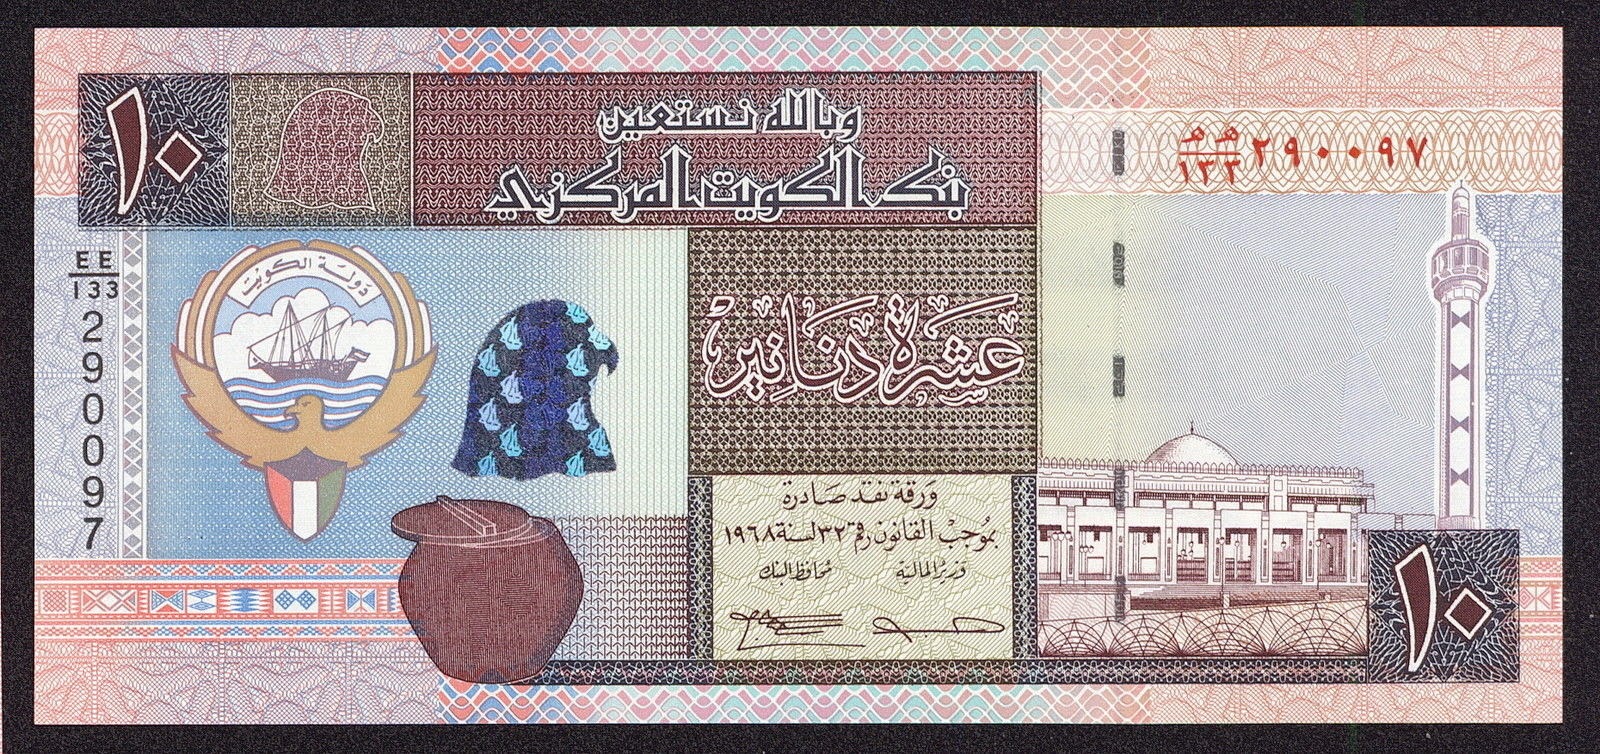 Kuwait money 10 Kuwaiti Dinar banknote 1994